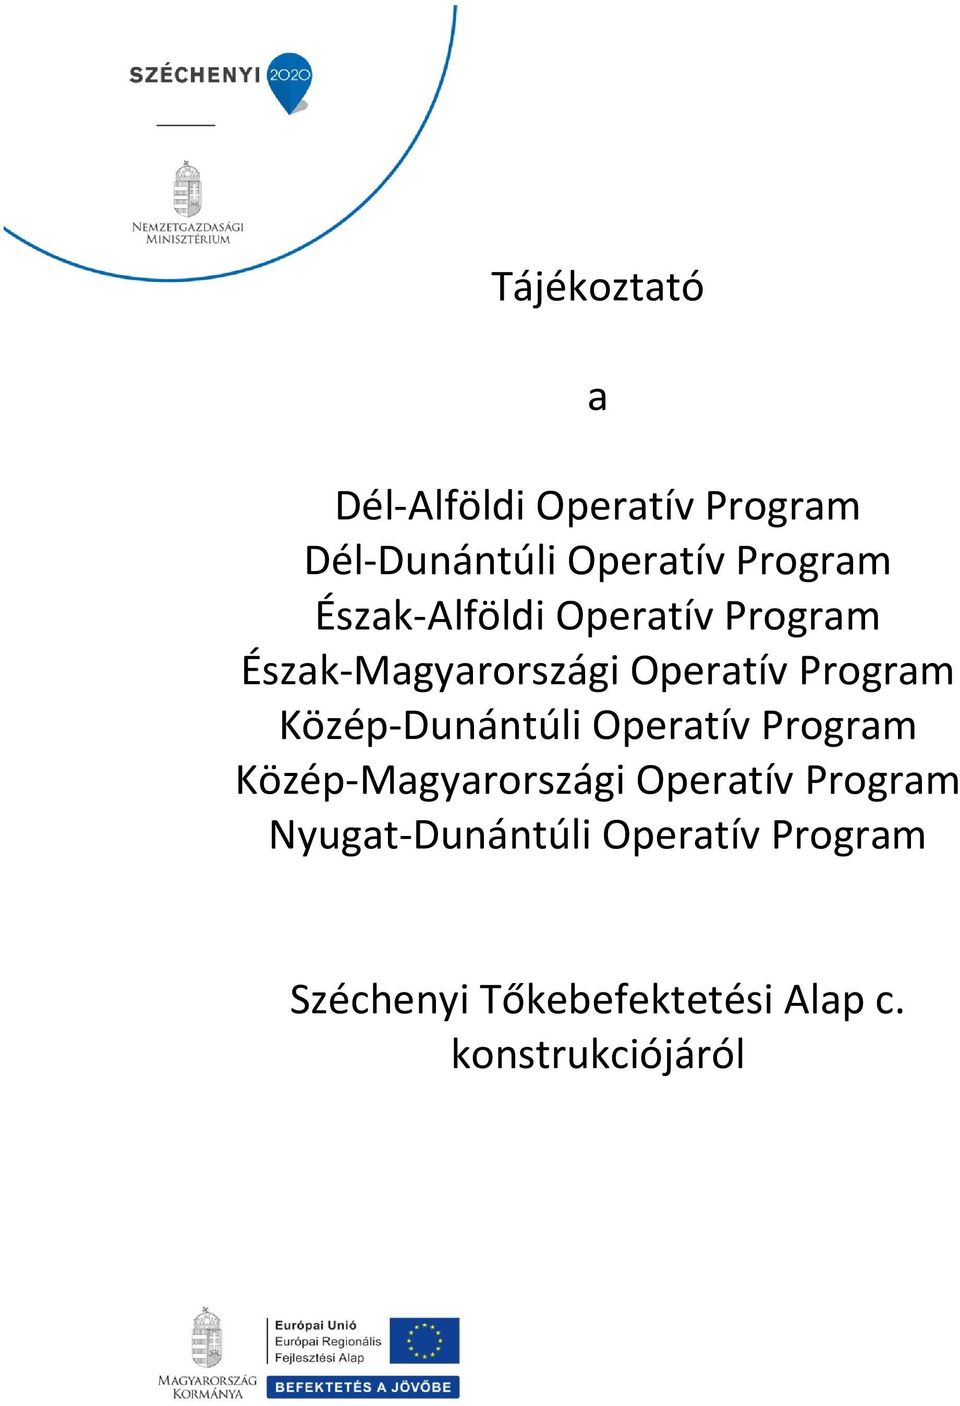 Közép-Dunántúli Operatív Program Közép-Magyarországi Operatív Program